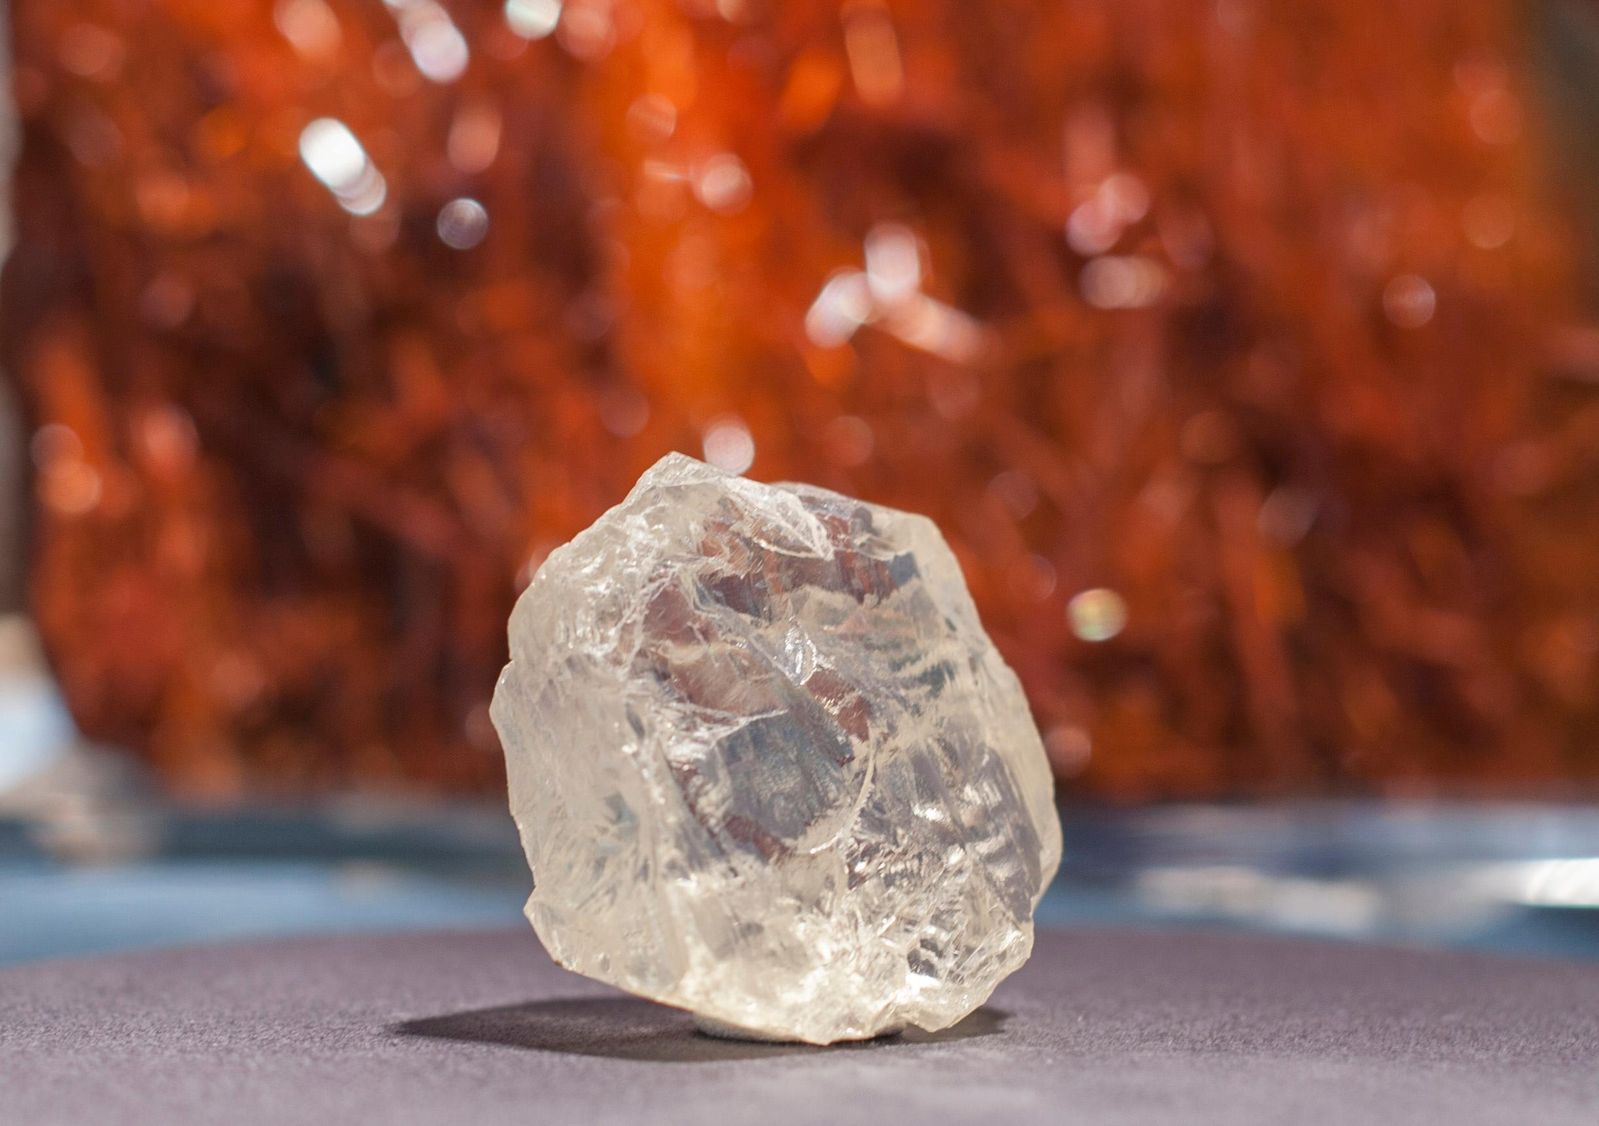 Rare, uncut blue diamond found in South Africa